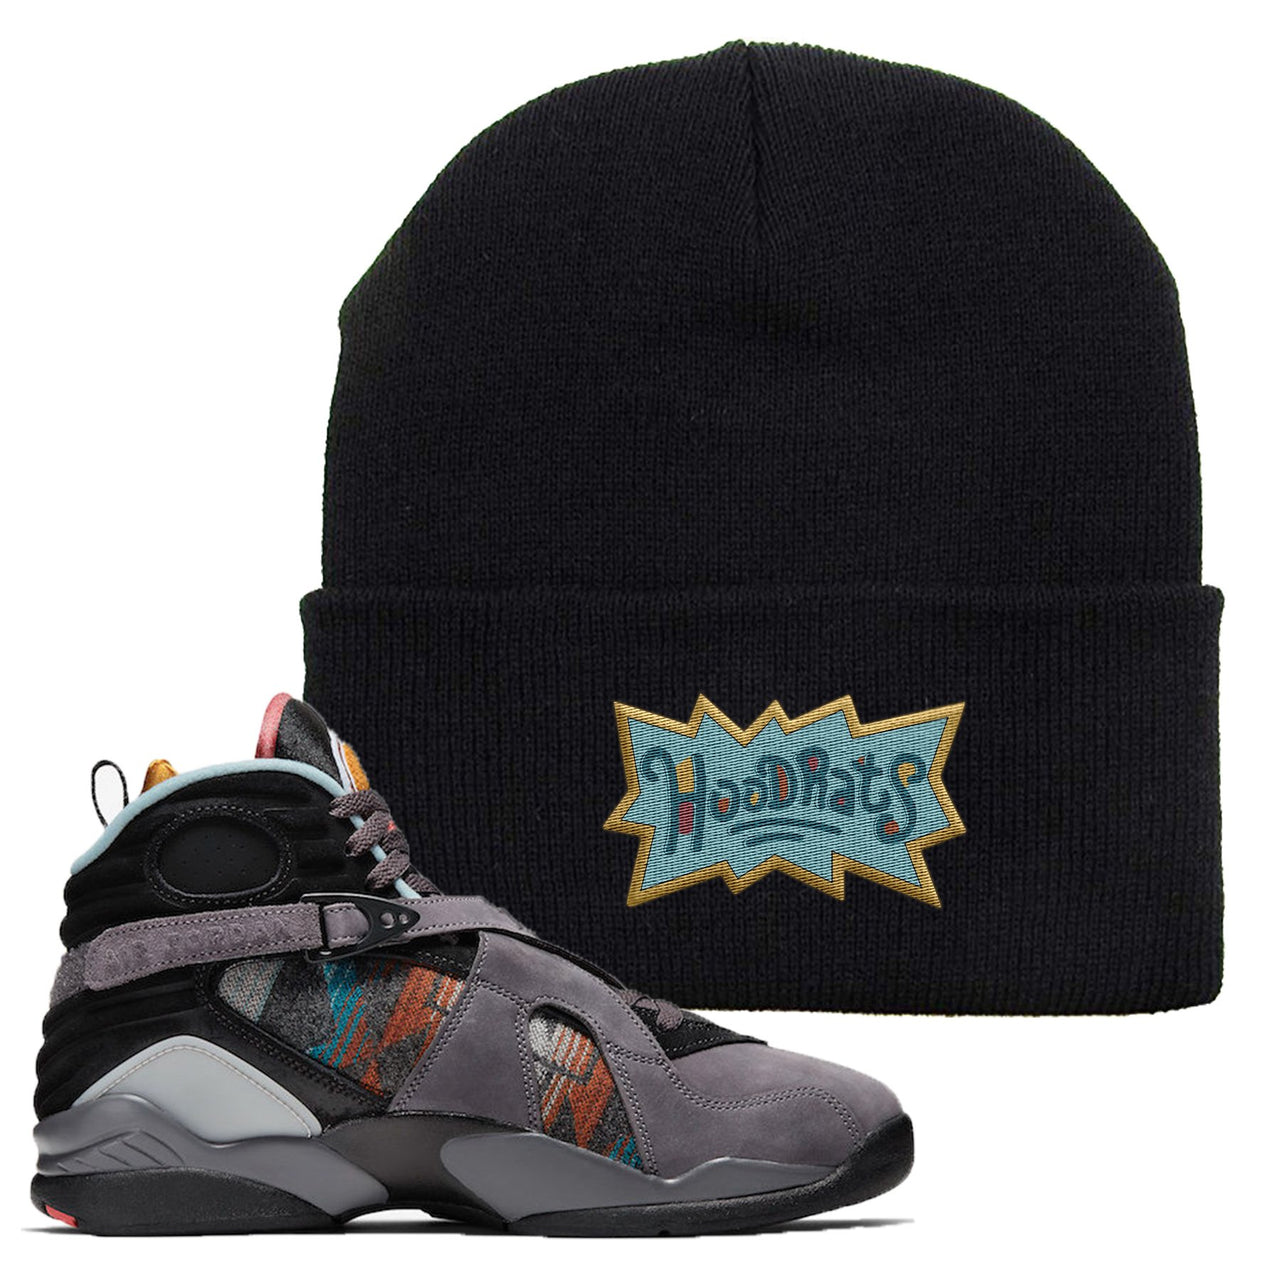 Jordan 8 N7 Pendleton Hood Rats Black Sneaker Hook Up Beanie